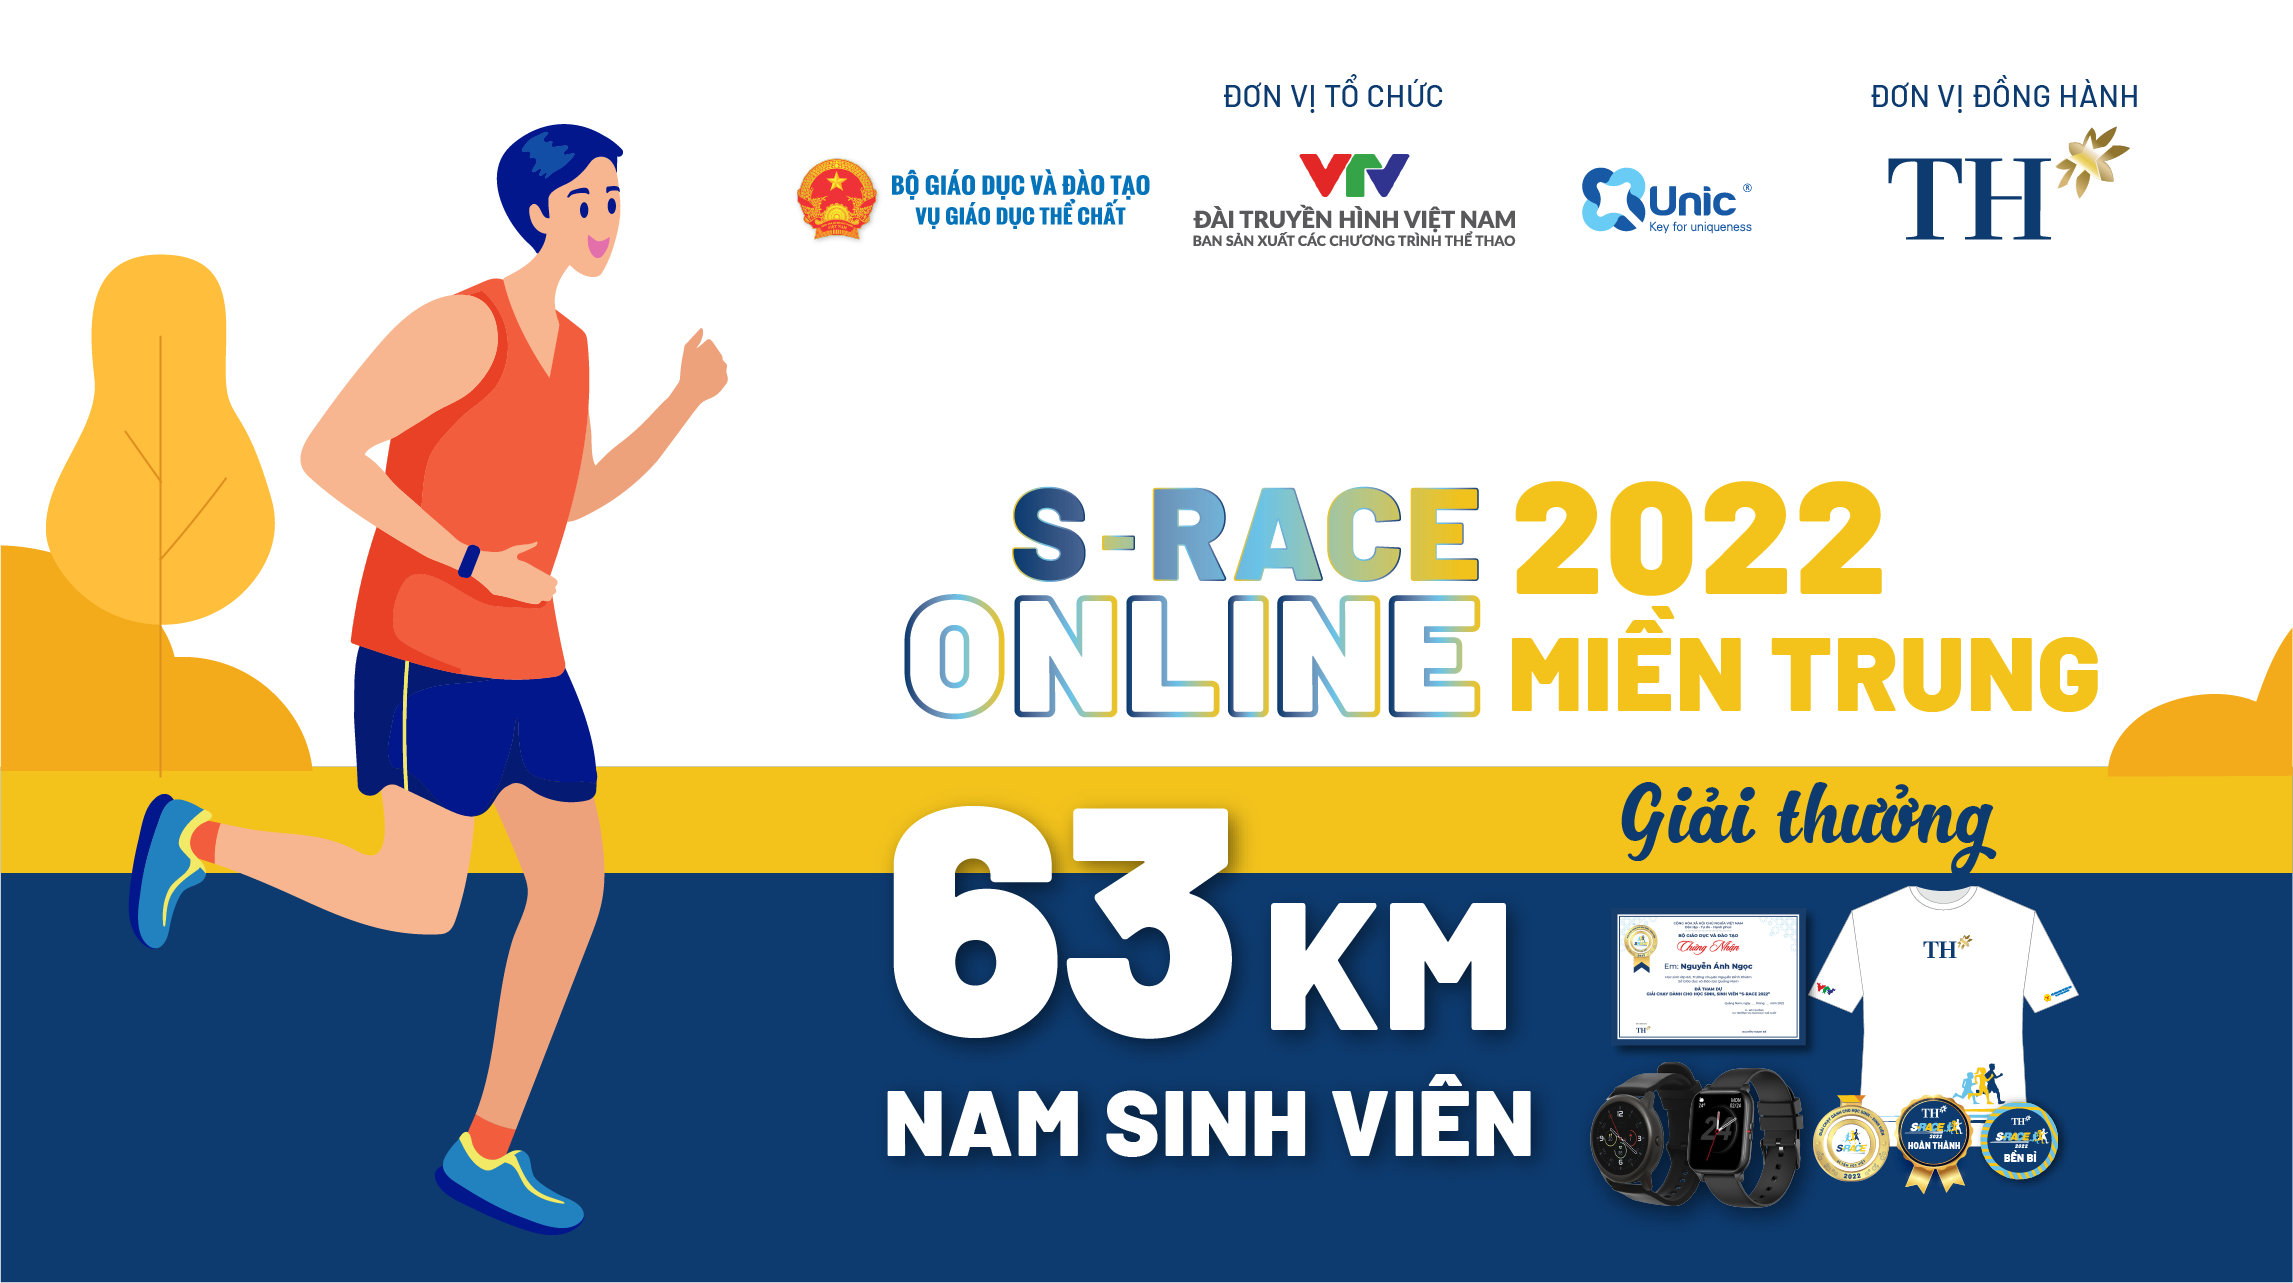 63 KM NAM SINH VIÊN (S-Race Online miền Trung) - Thử thách chạy bộ - Unlimited Chain